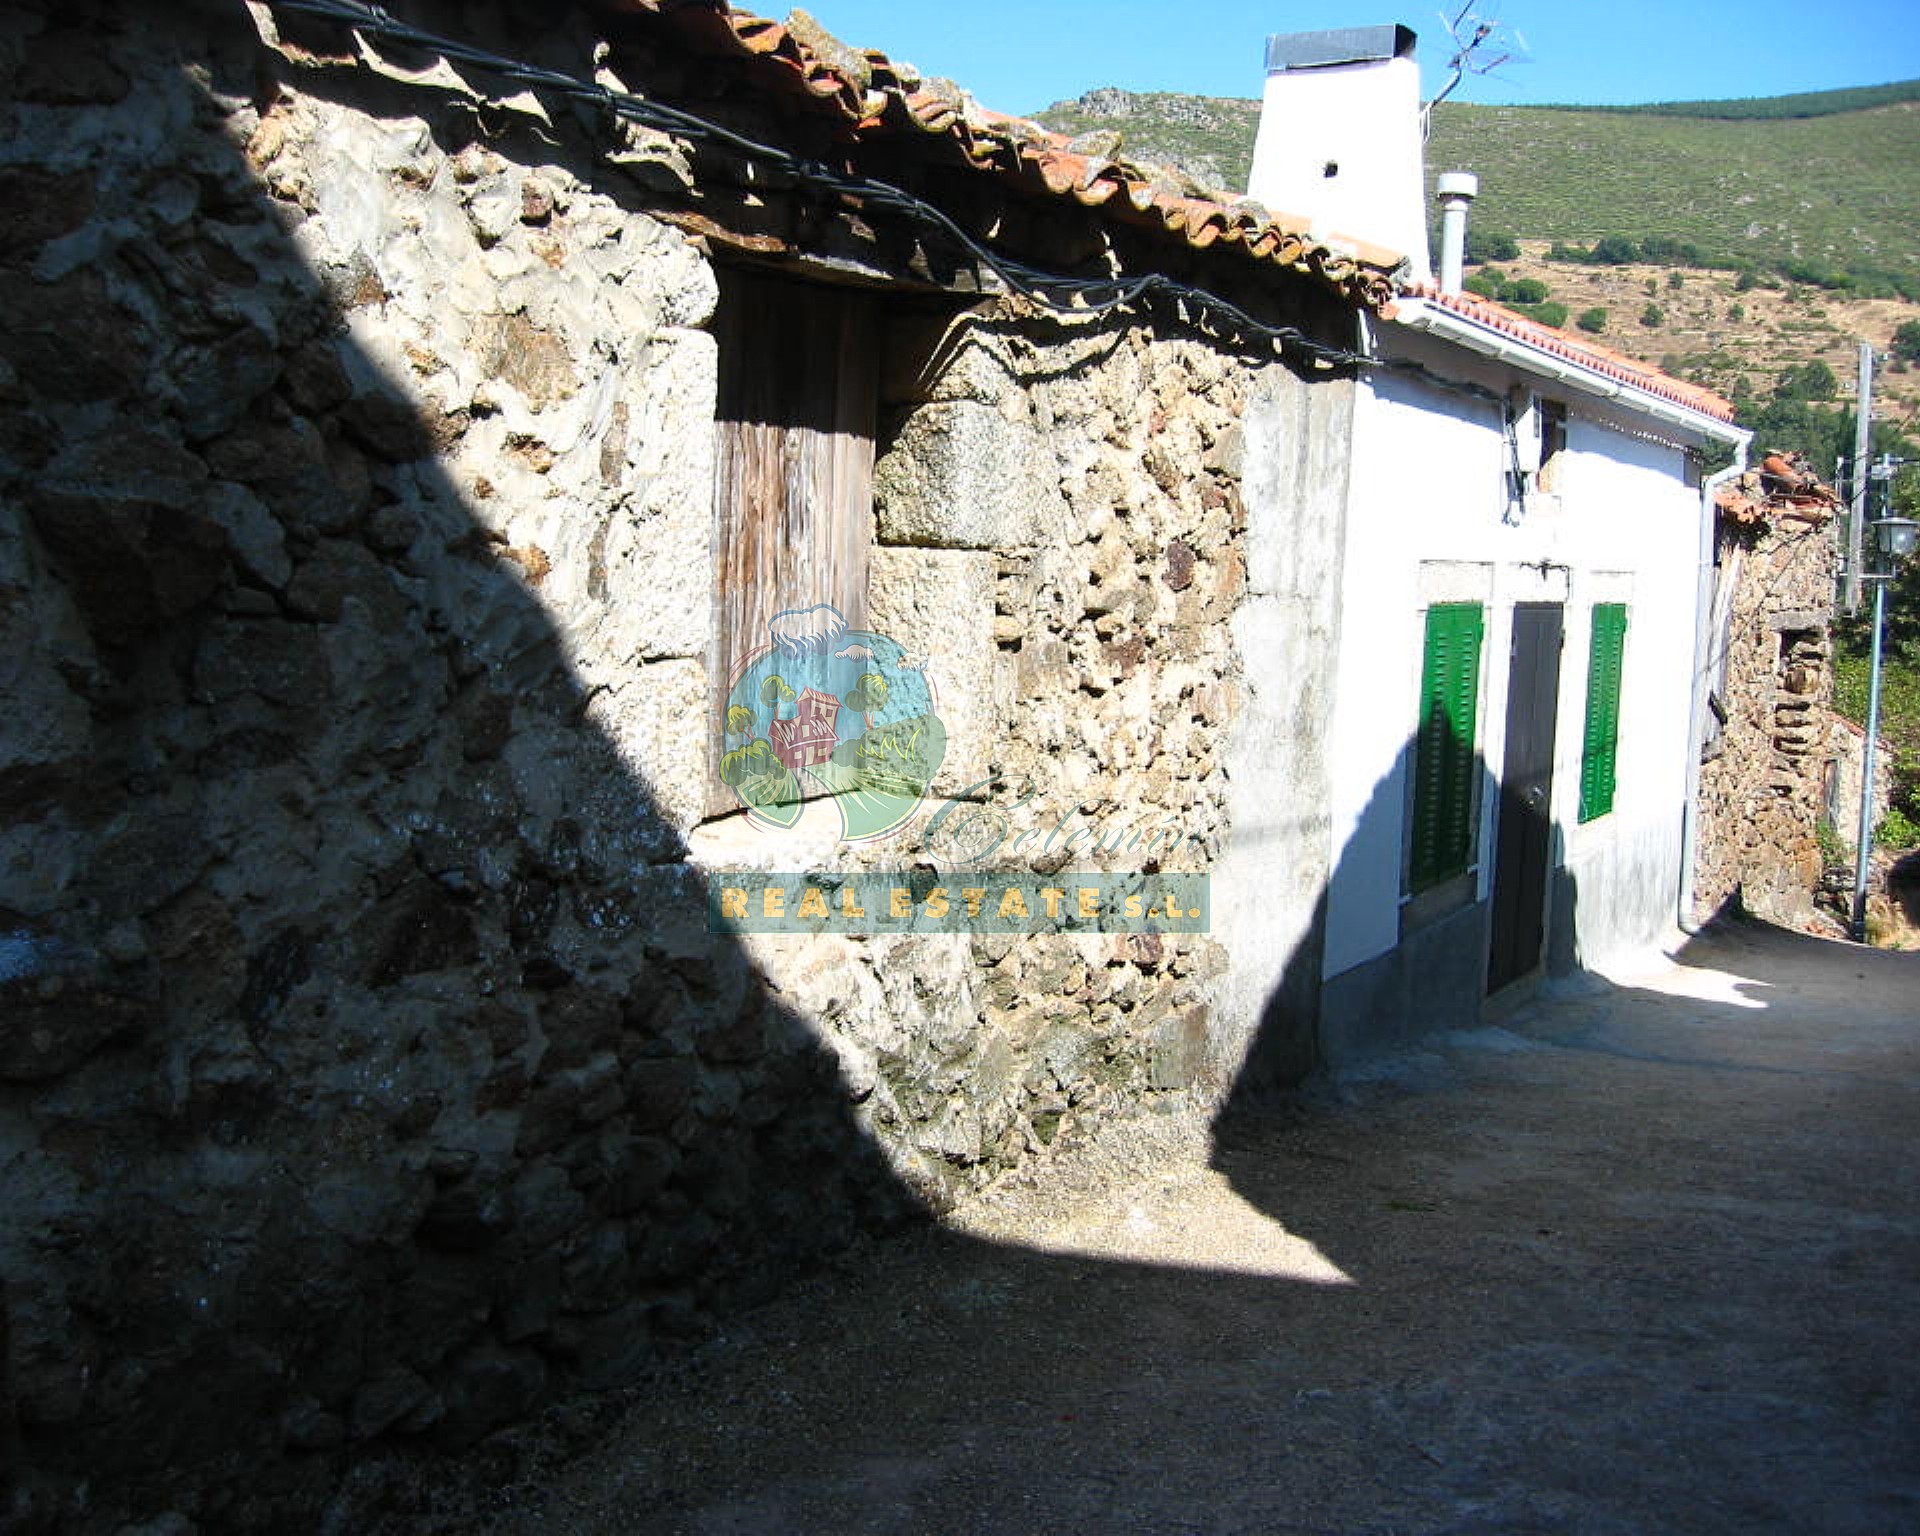 Barn & hayloft in Sierra de Gredos.